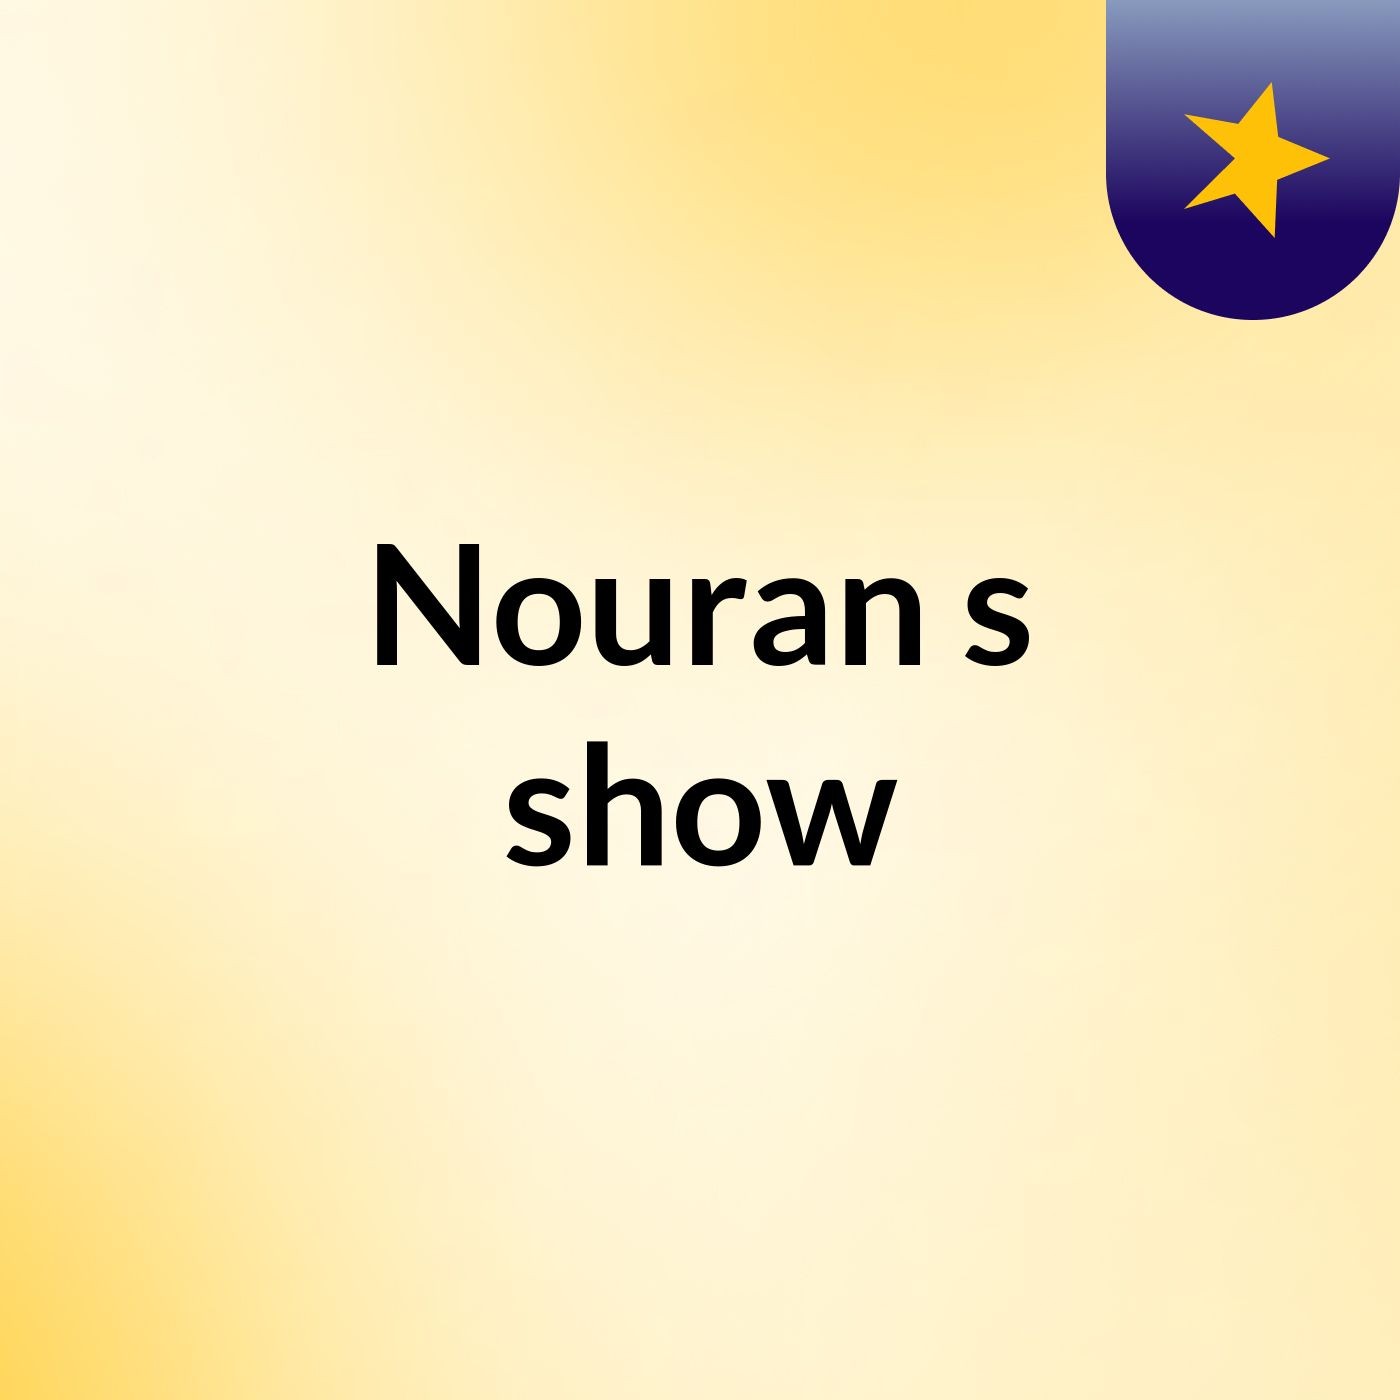 Nouran's show